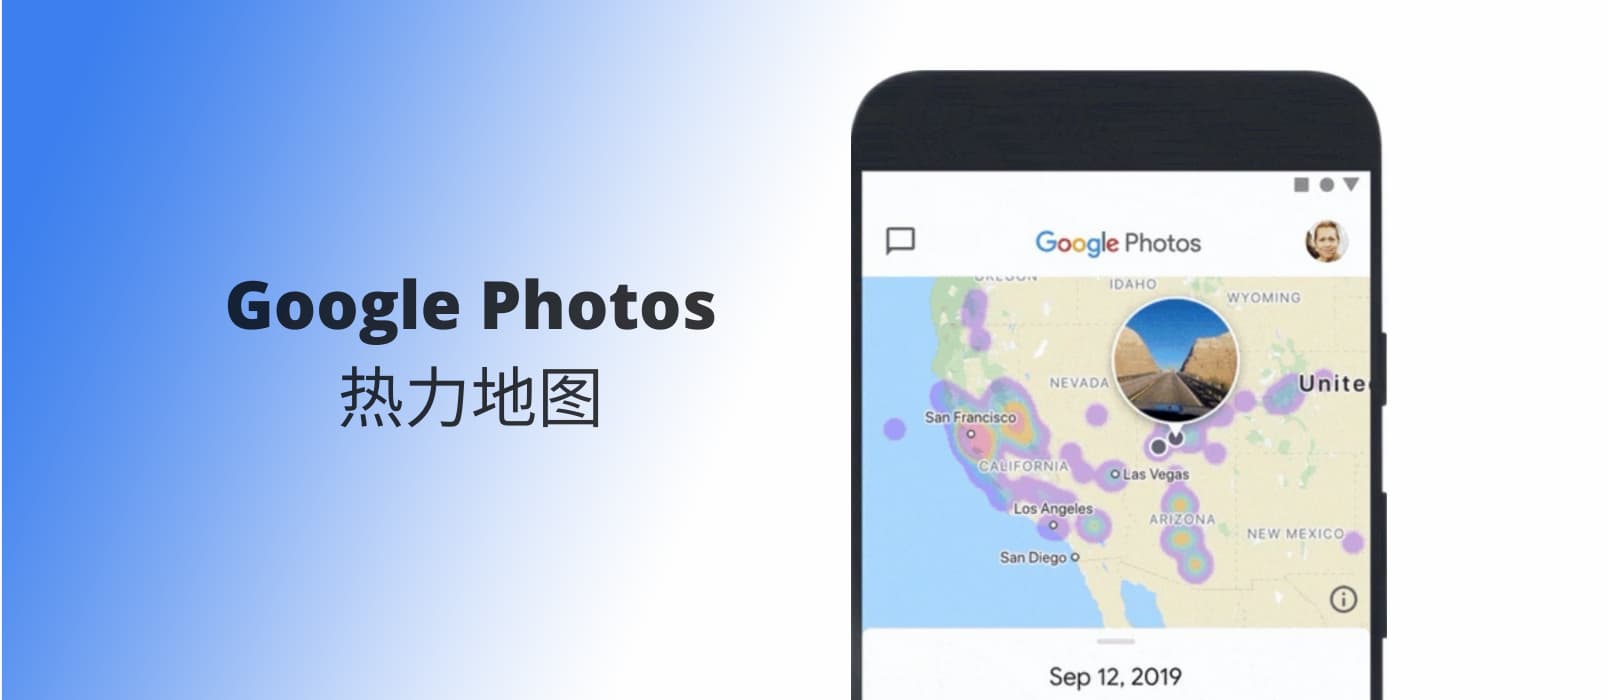 Google Photos 新增照片热力地图功能，这可能是最直观的地图显示照片功能 1